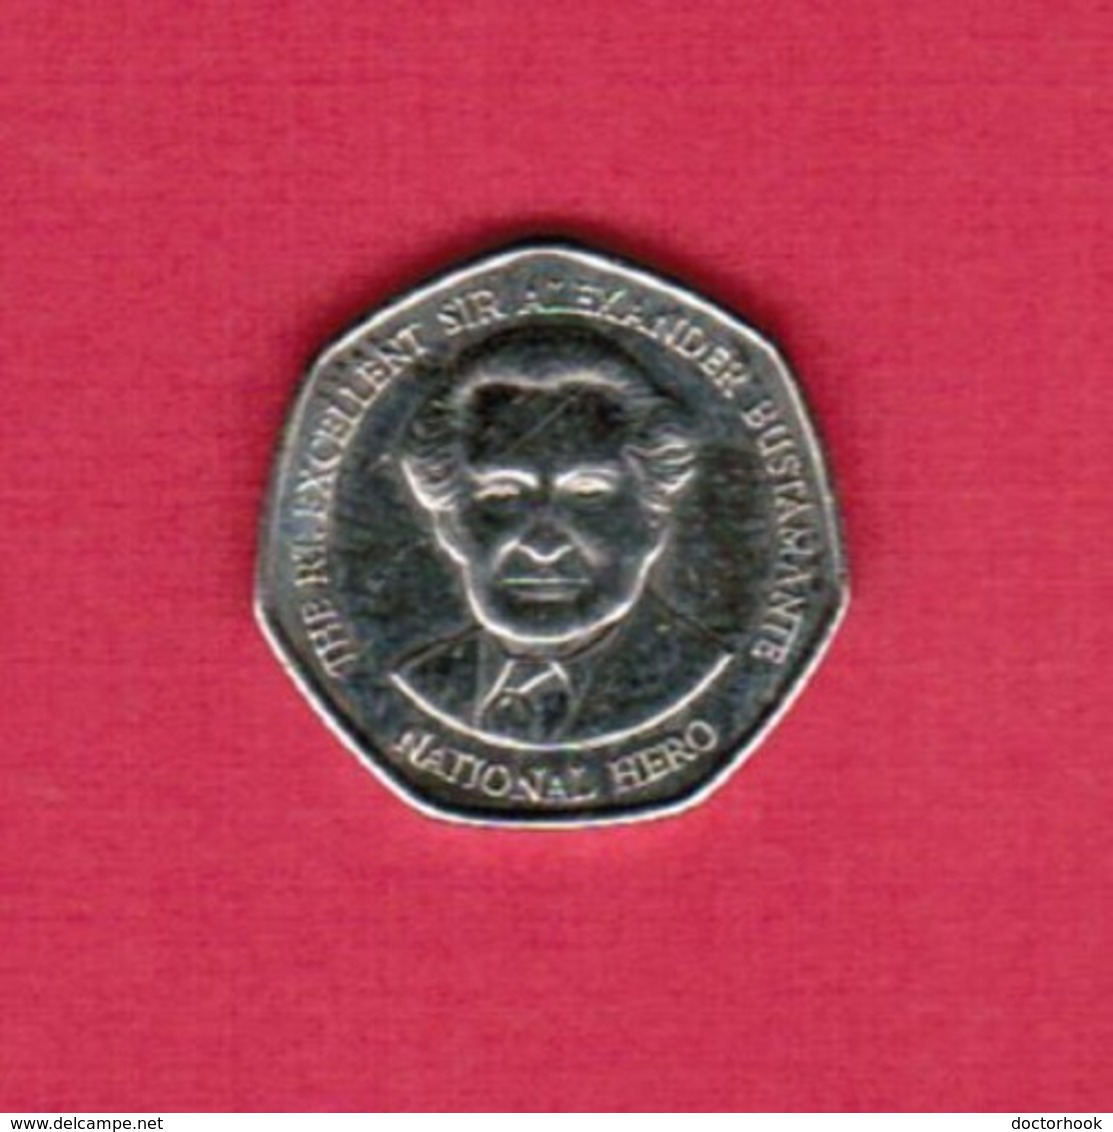 JAMAICA   $1.00 DOLLAR 2003 (KM # 164) #5233 - Jamaique